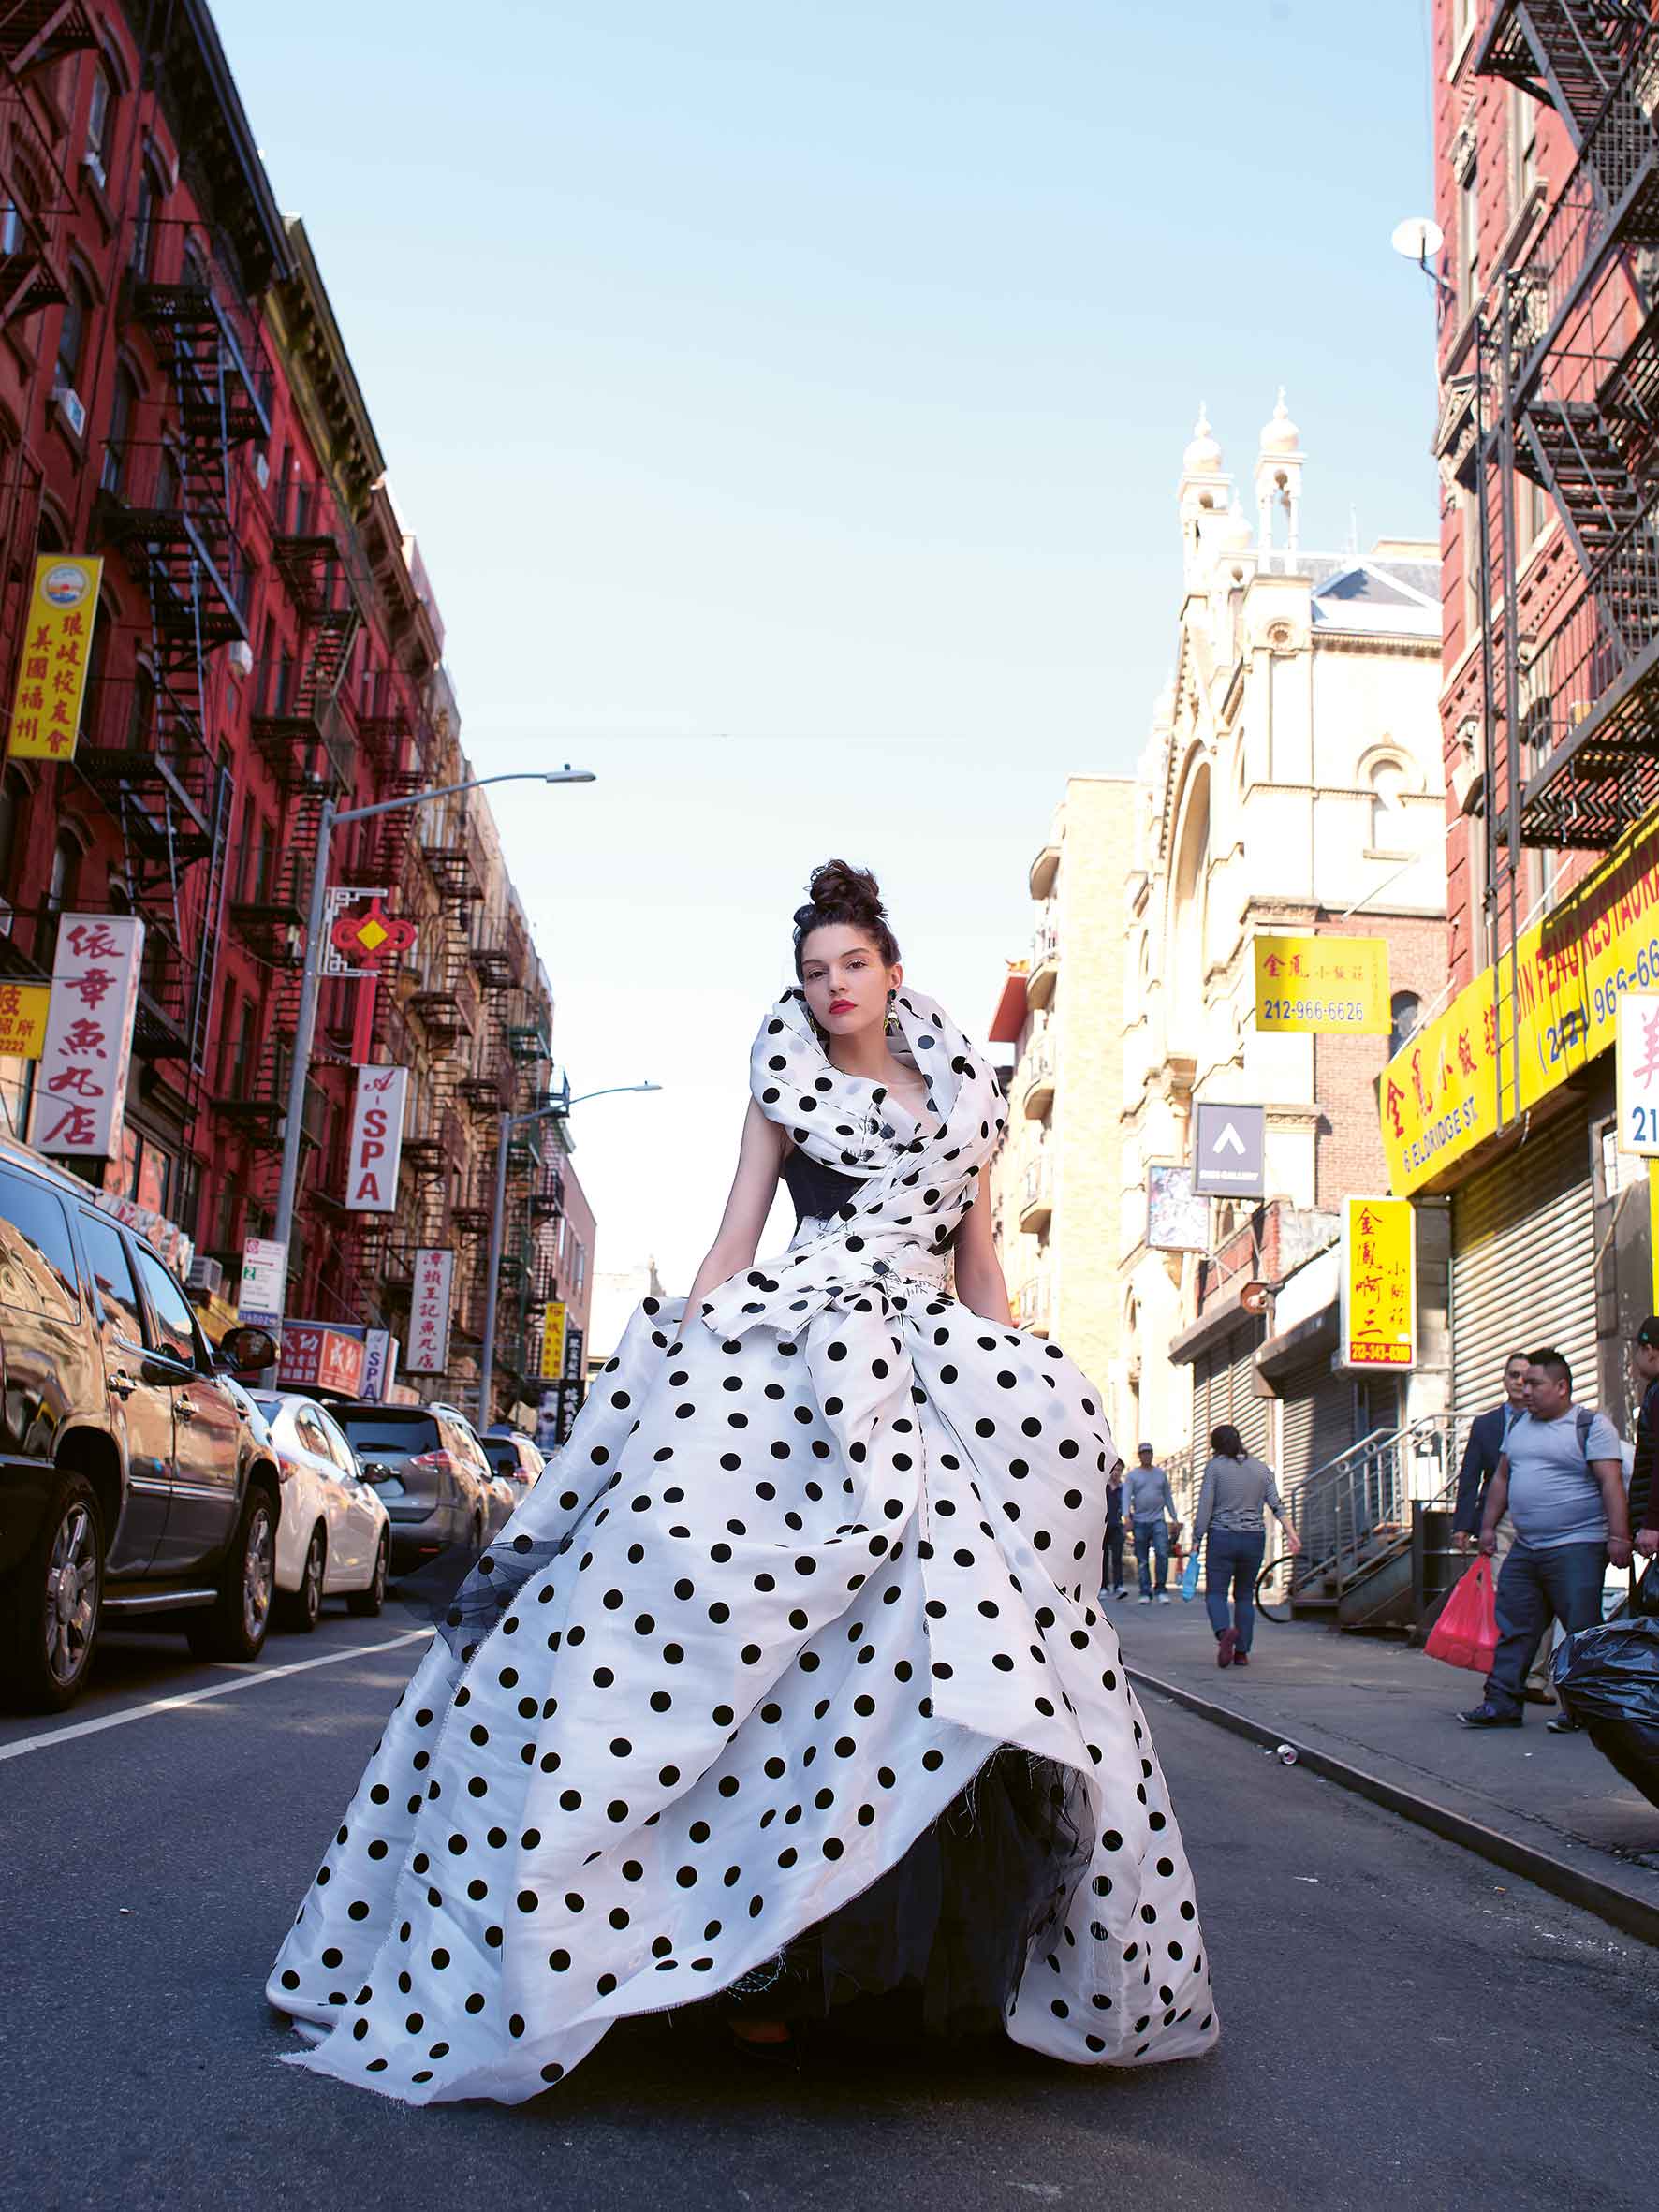 Chic New Yorker: En la Gran Manzana la moda luce espectacular